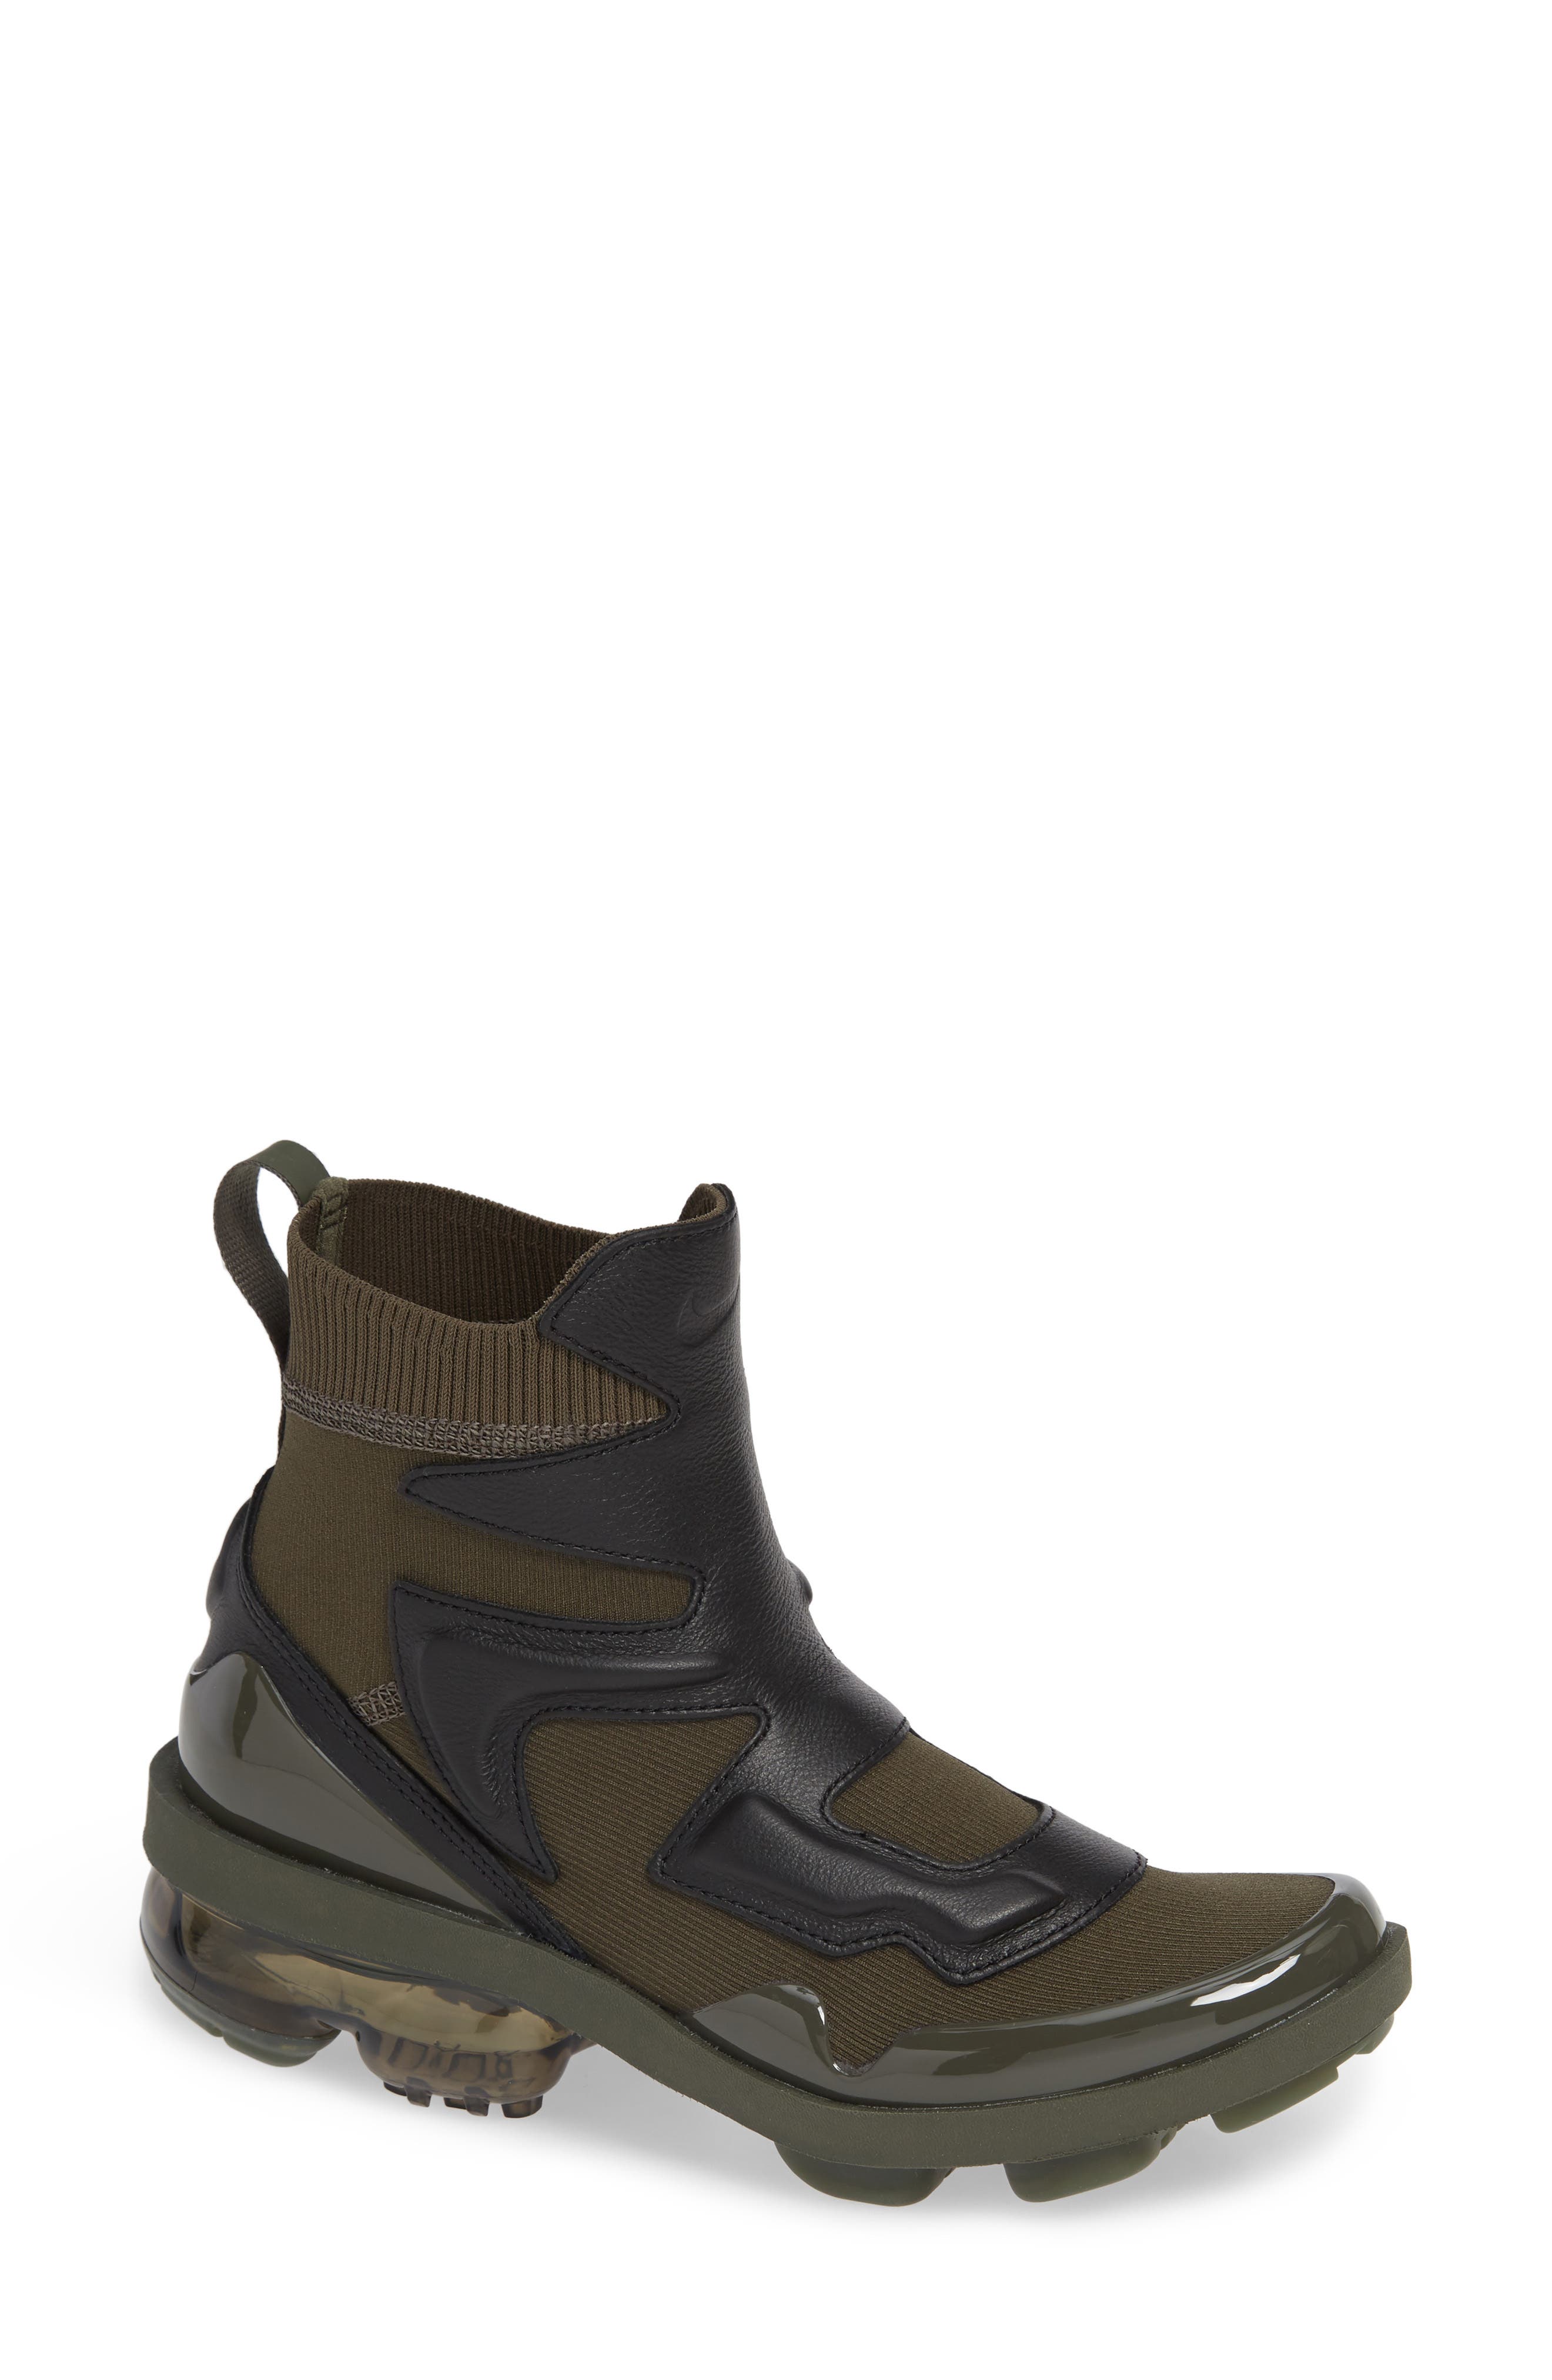 vapormax boots